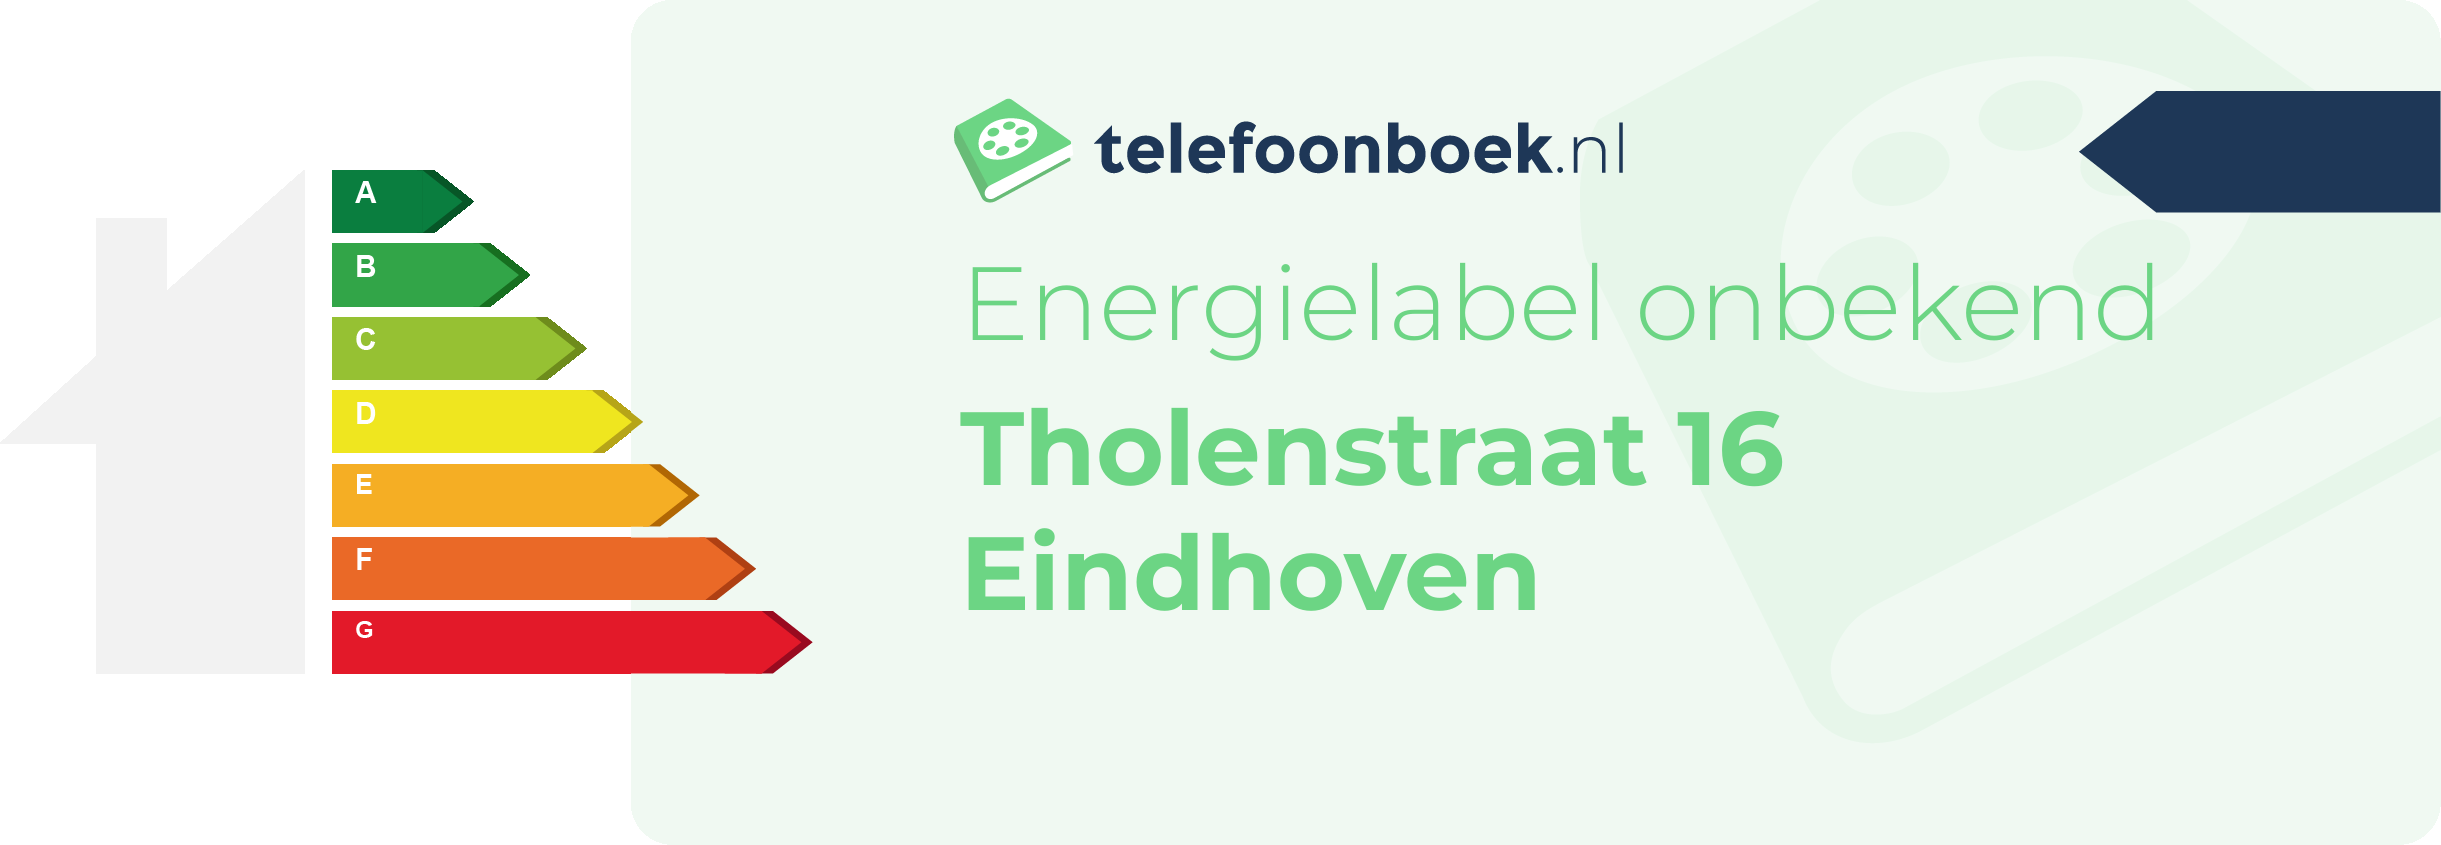 Energielabel Tholenstraat 16 Eindhoven